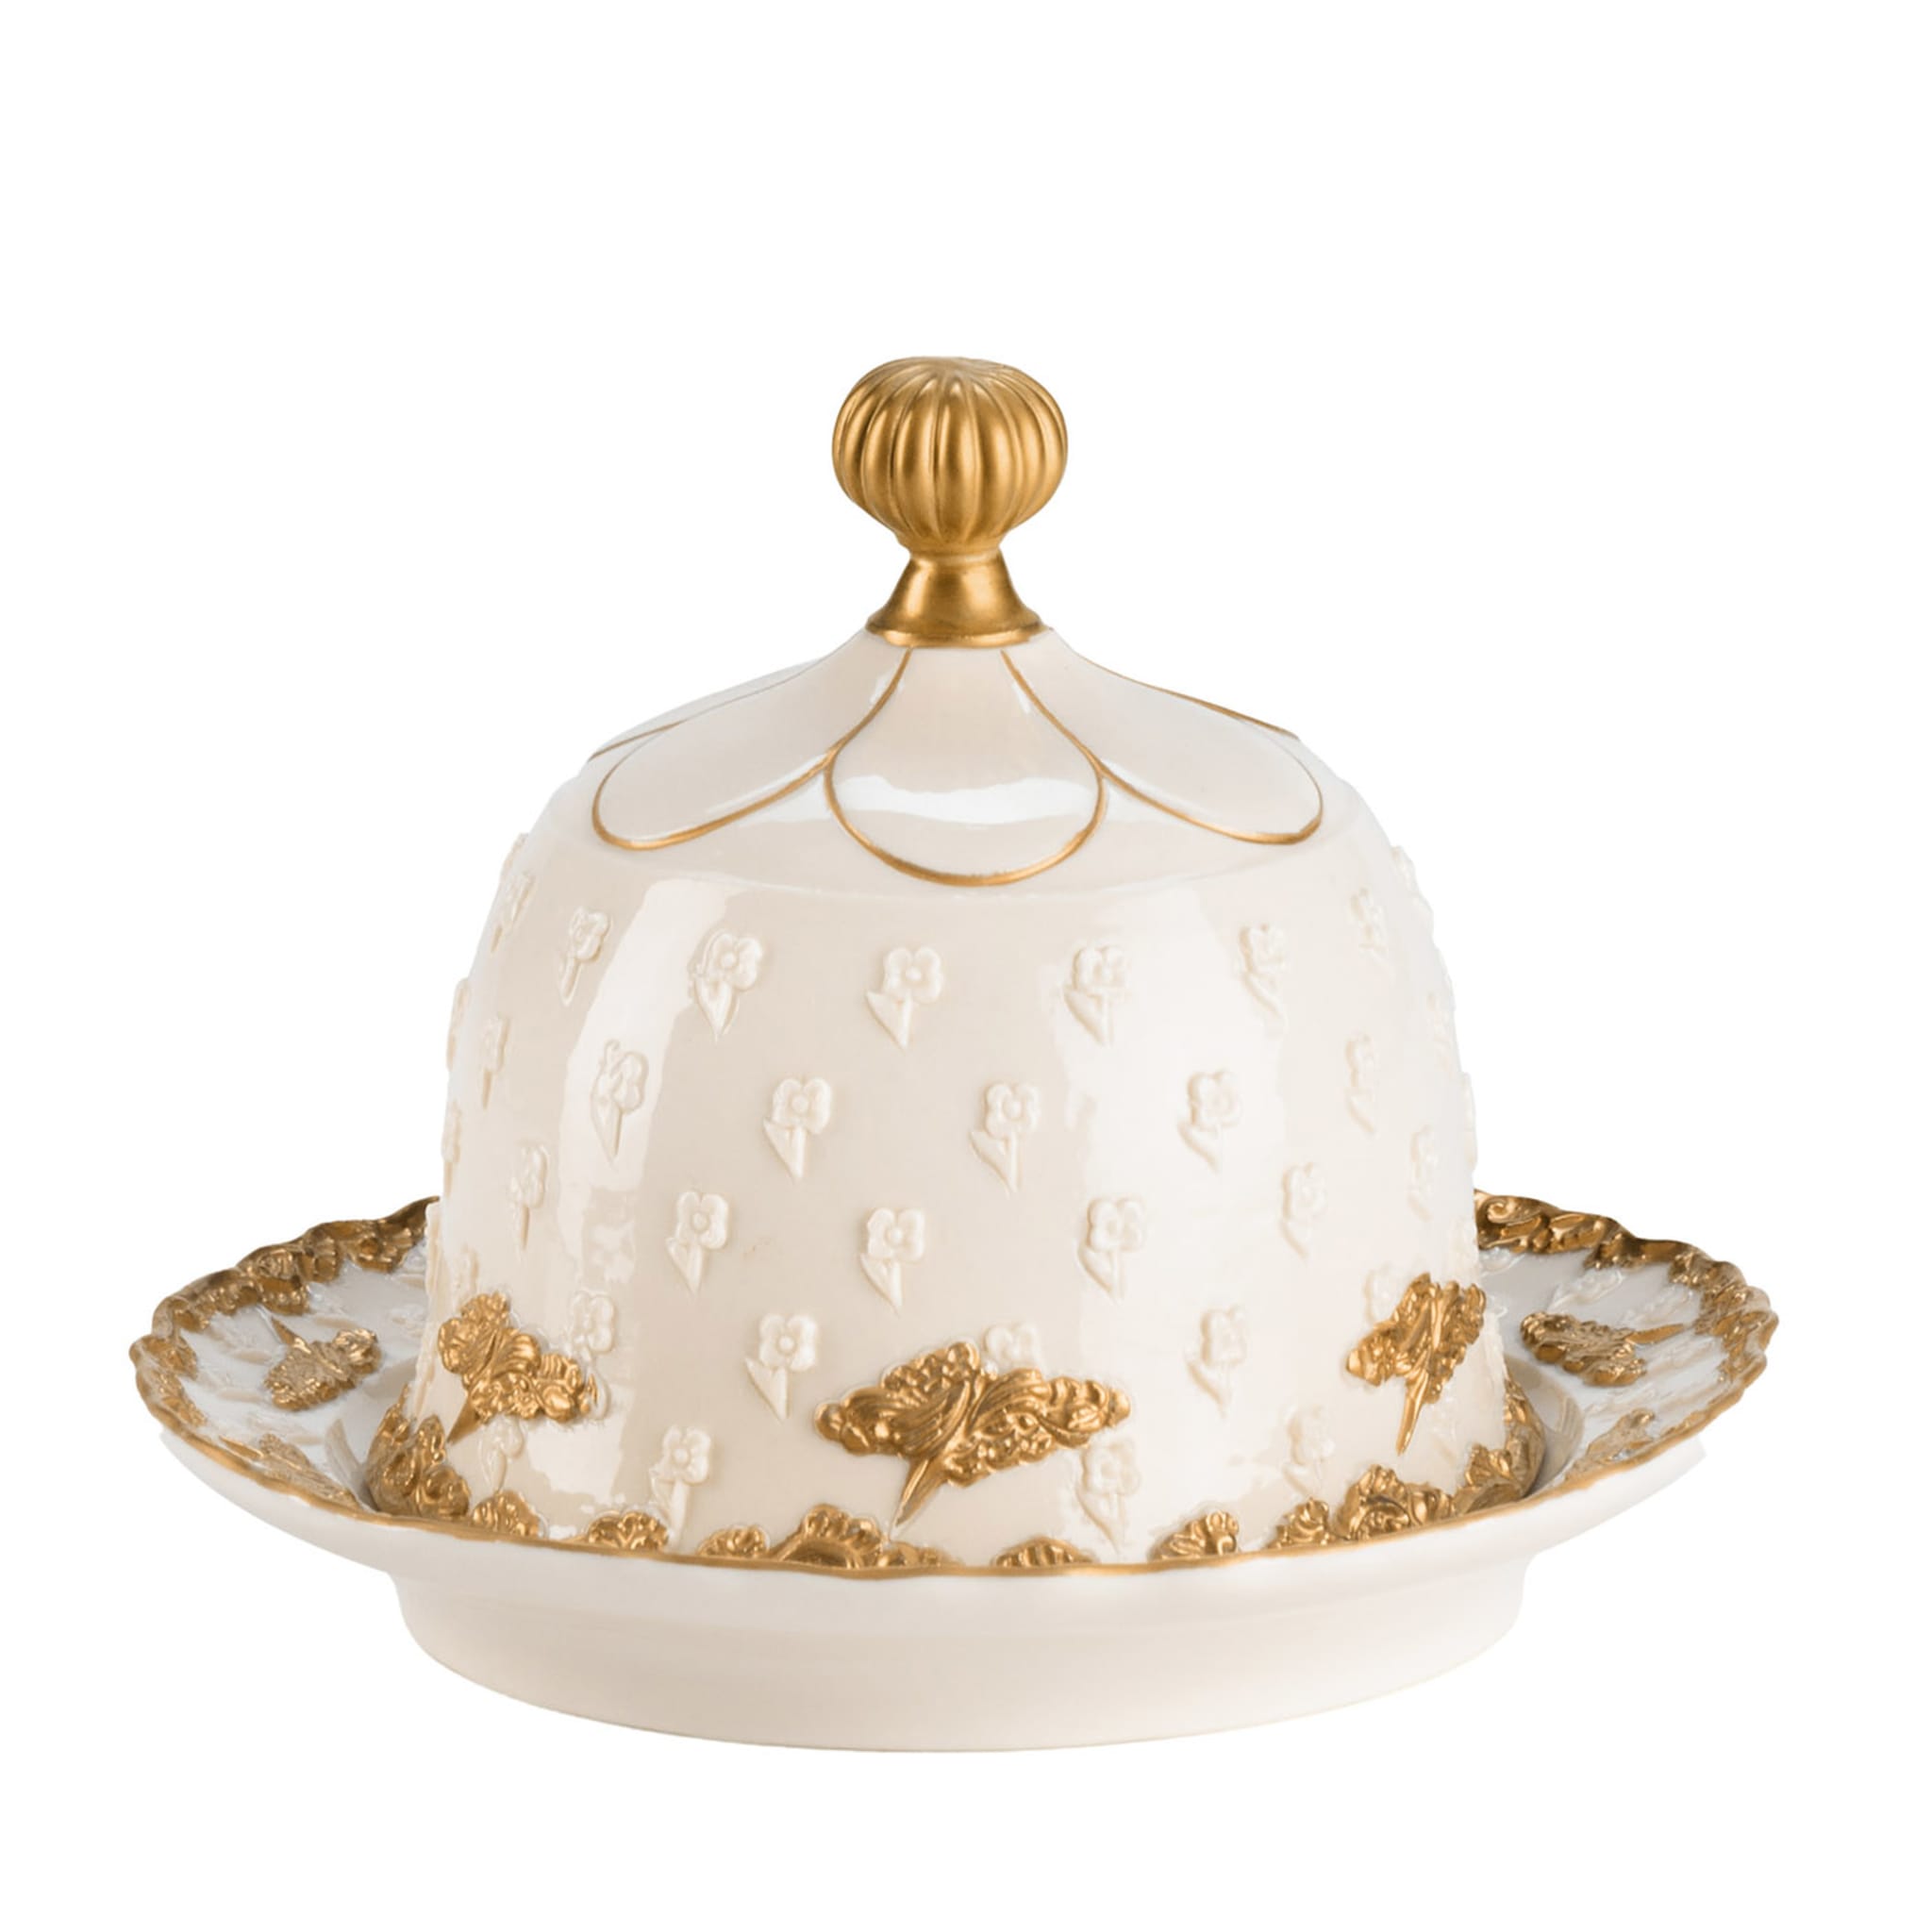 Burriera Lucia bianca e oro con coperchio a cupola - Vista principale